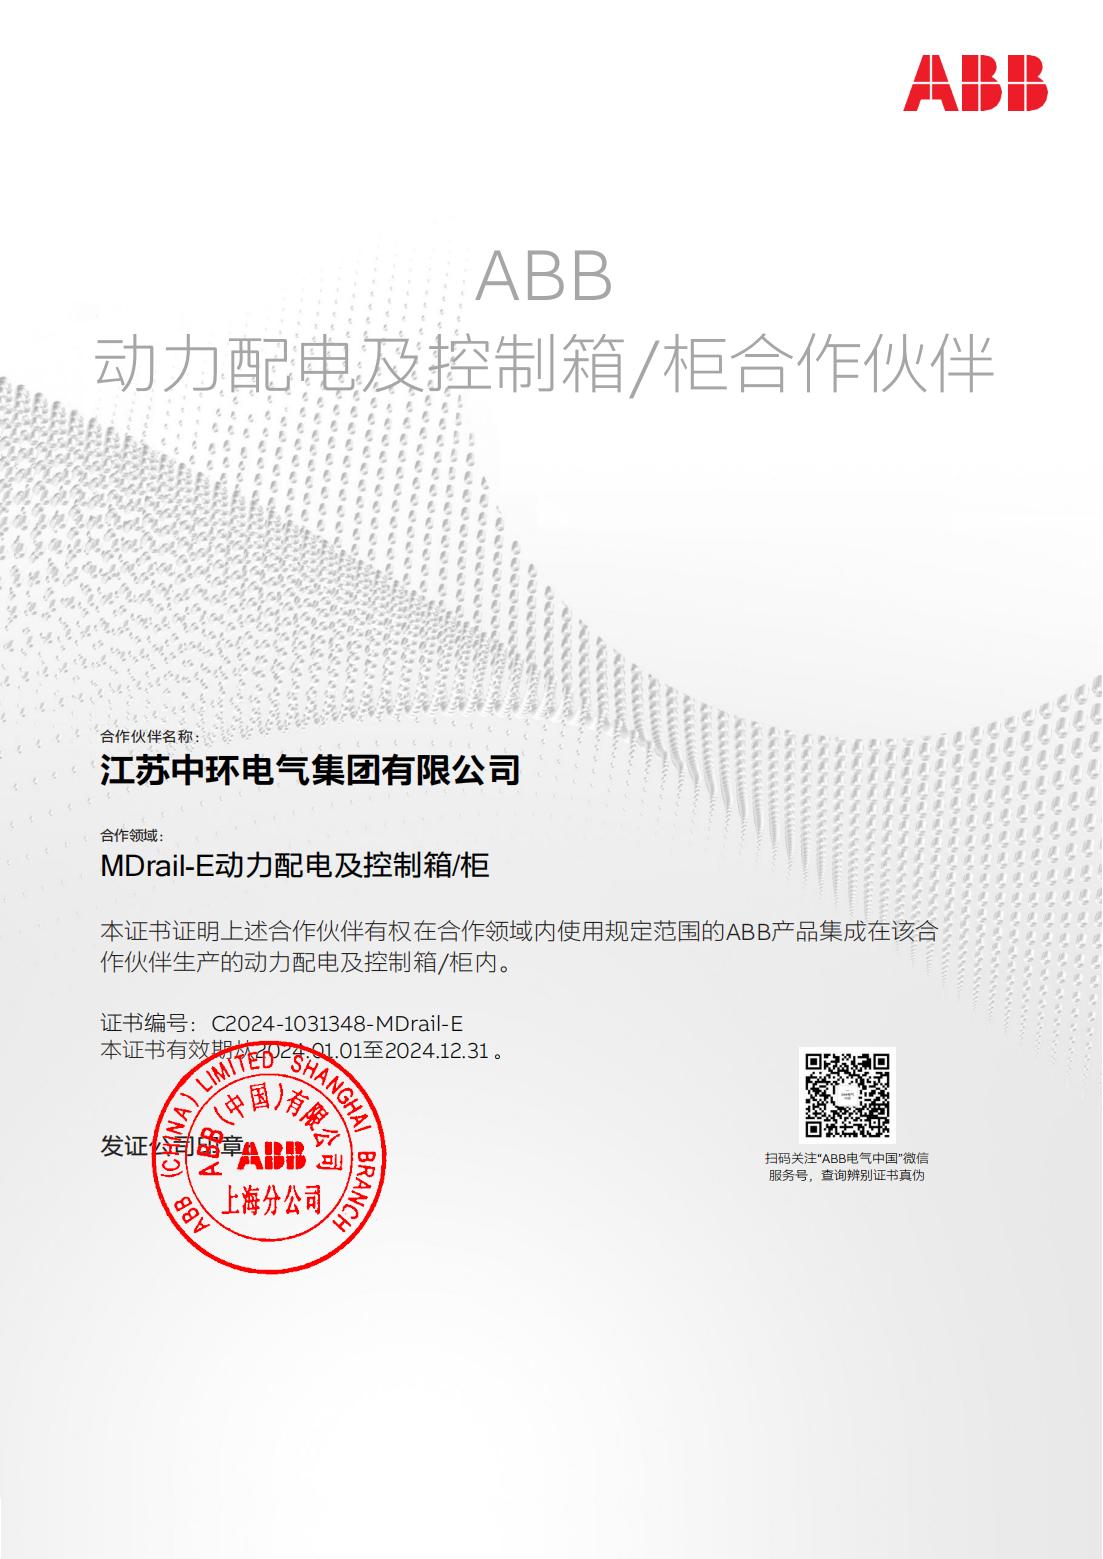 合作伙伴 ABB(MDrail-E) 